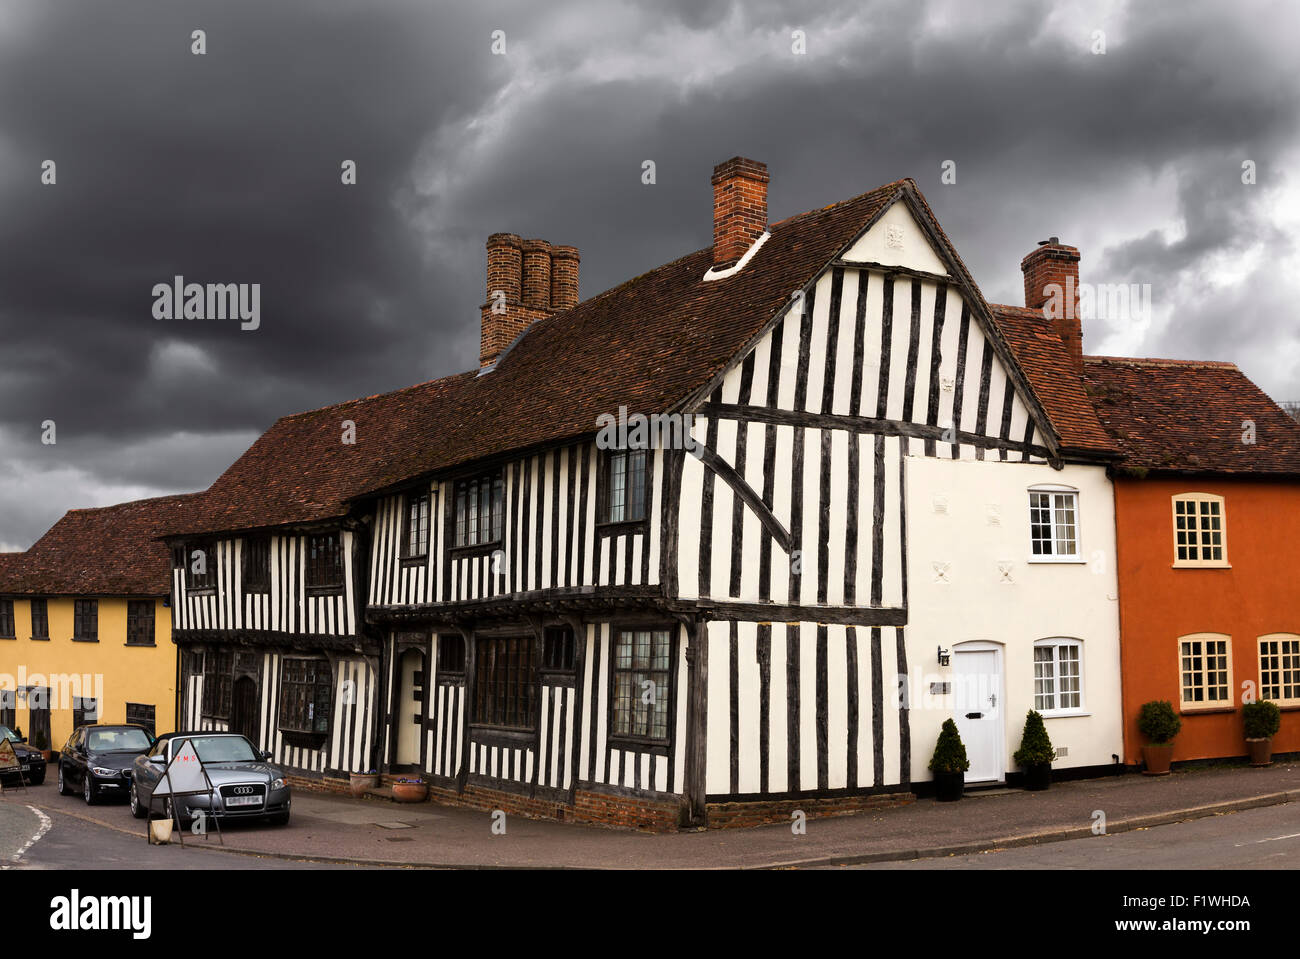 Lavenham, ein Dorf und Zivilgemeinde in Suffolk, England bekannt für seine 15. Jahrhundert Kirche, Fachwerkhaus mittelalterliche Häuser. Stockfoto